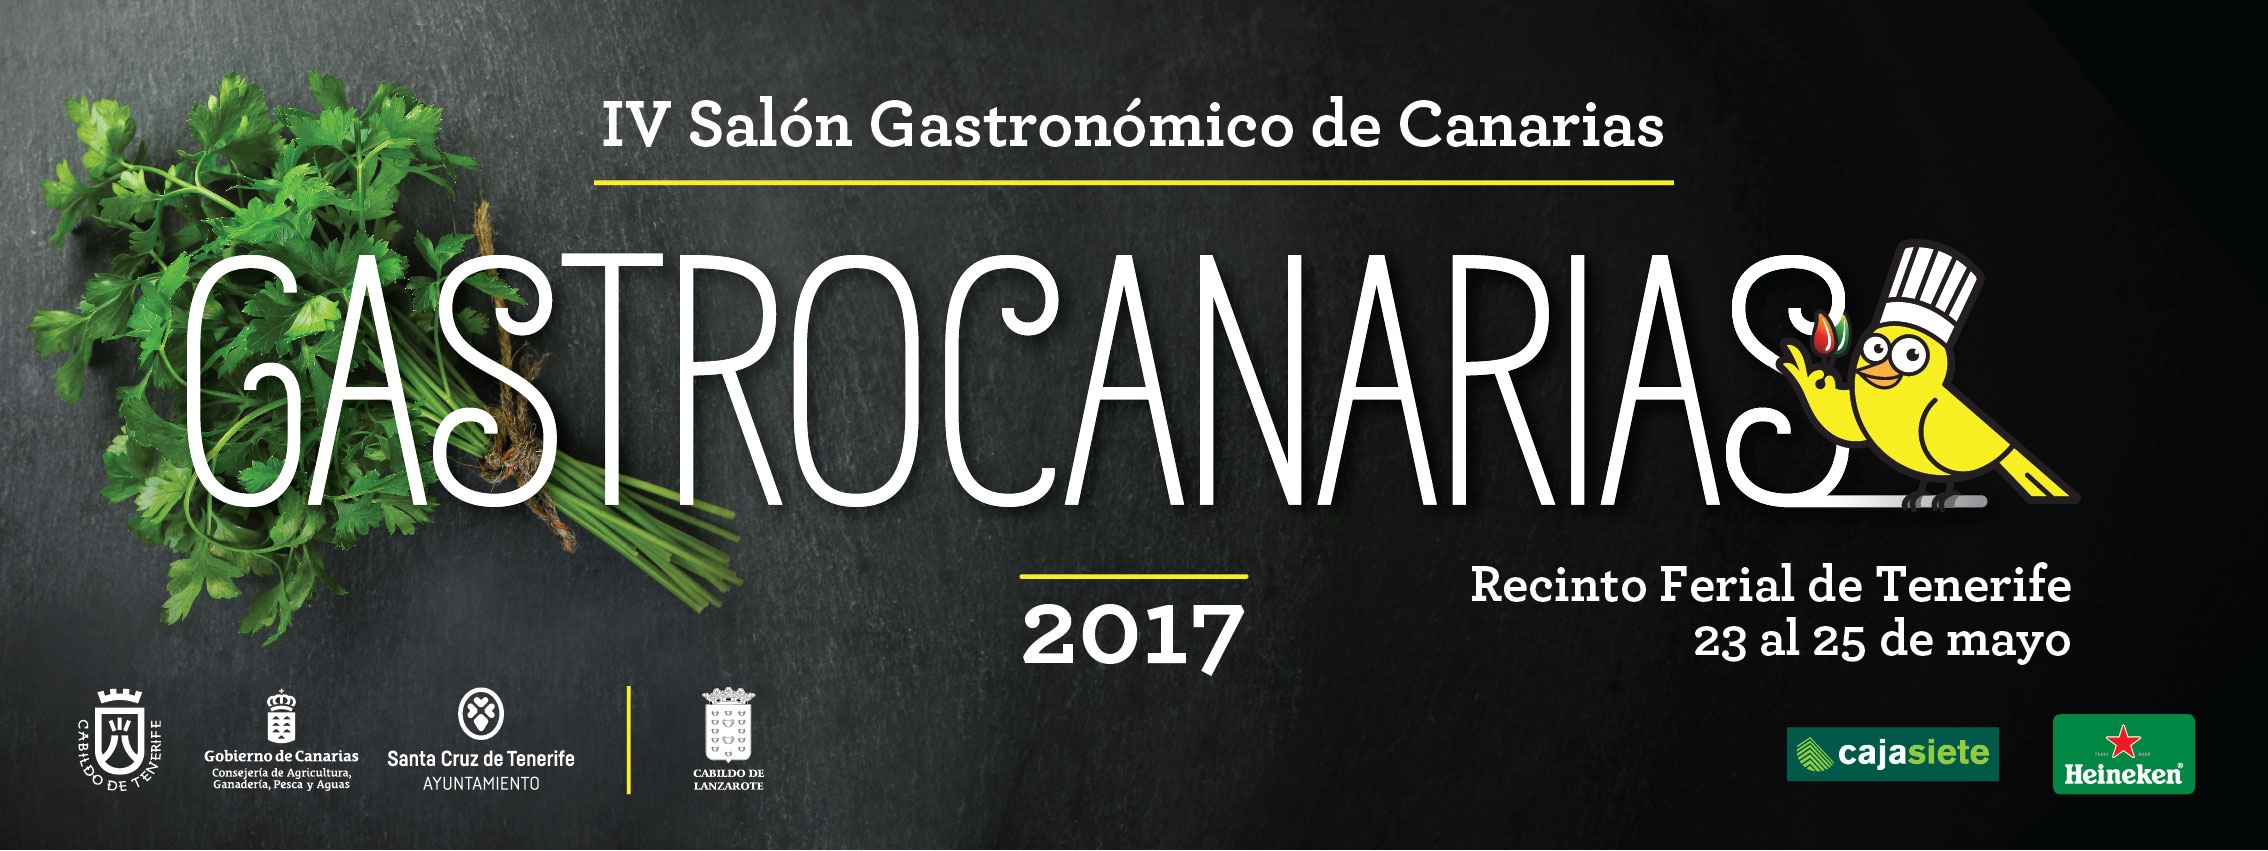 Puros Artesanos Julio presente en el IV Salón Gastronómico de Canarias, GastroCanarias 2017 en Santa Cruz de Tenerife.